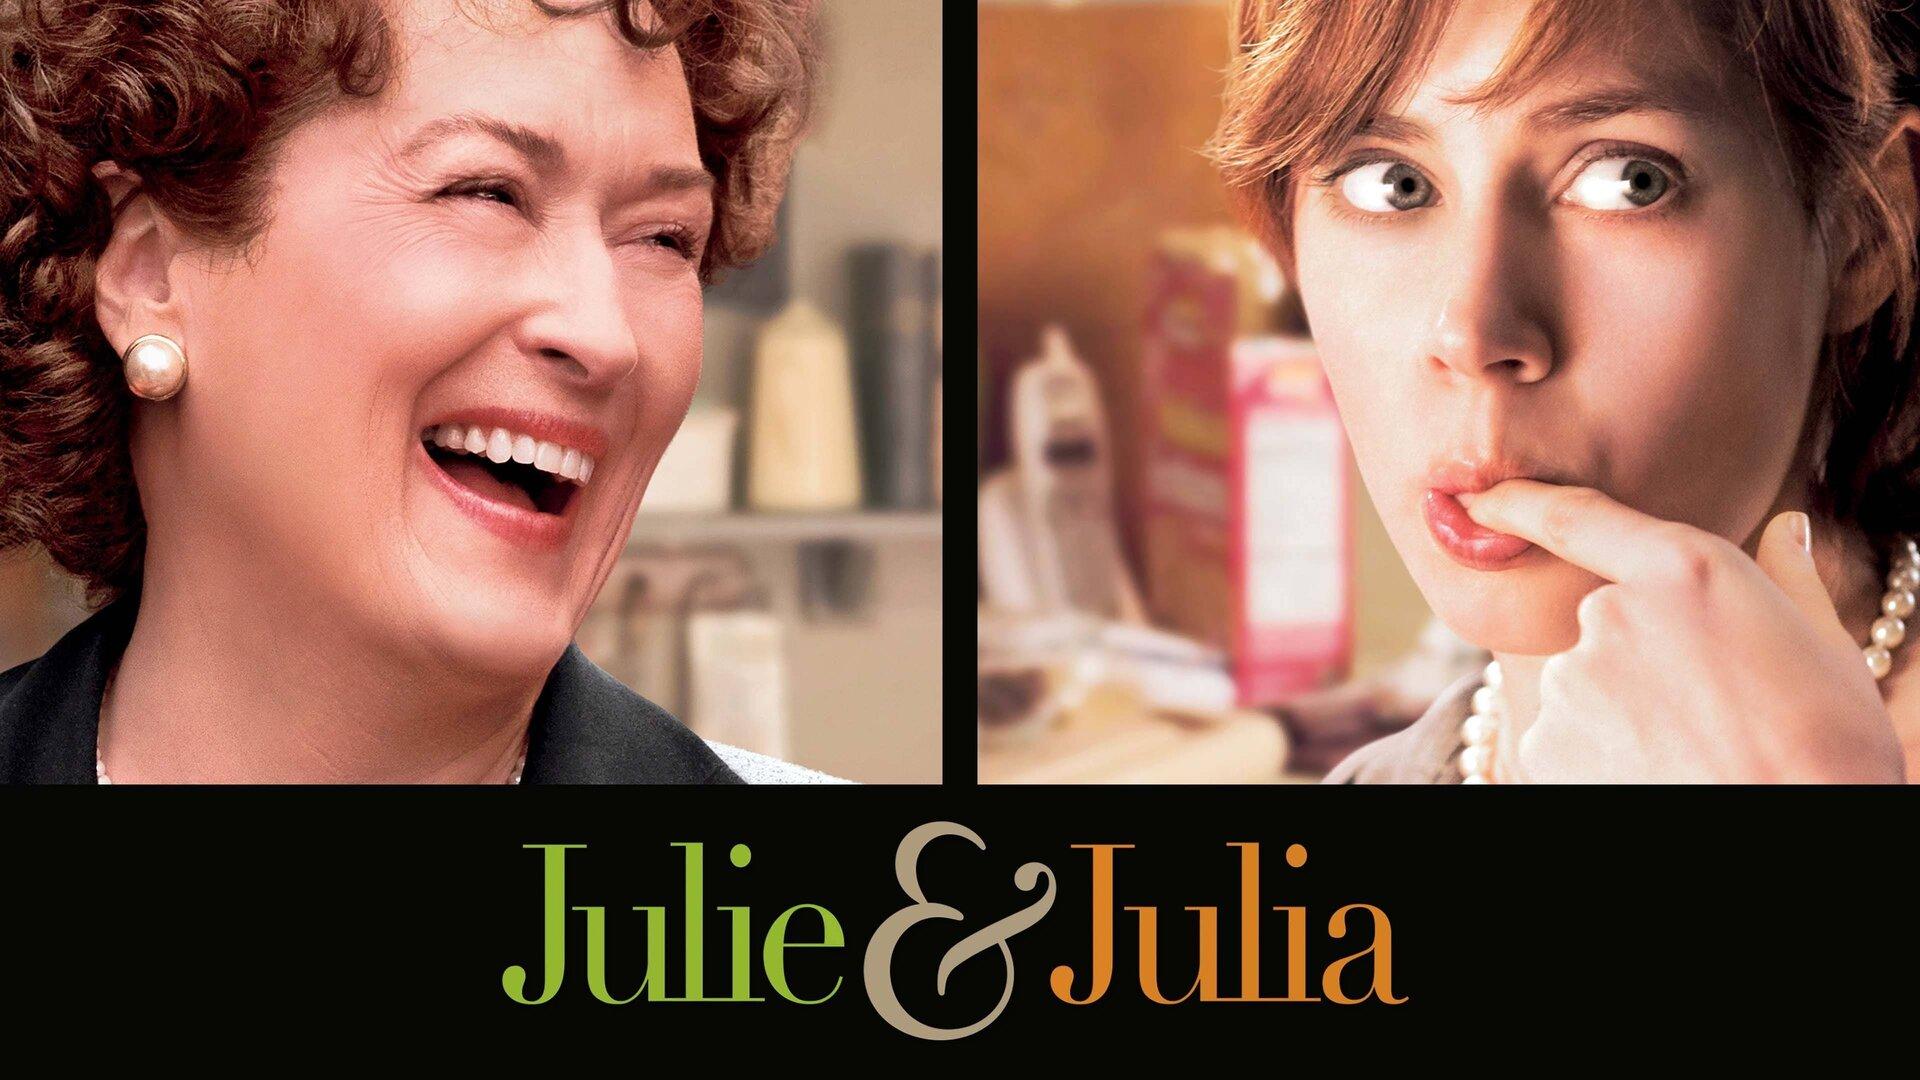 Ступка как символ Дня Влюблённых. Julie & Julia. Отзыв к фильму "Джули и Джулия: Готовим счастье по рецепту"